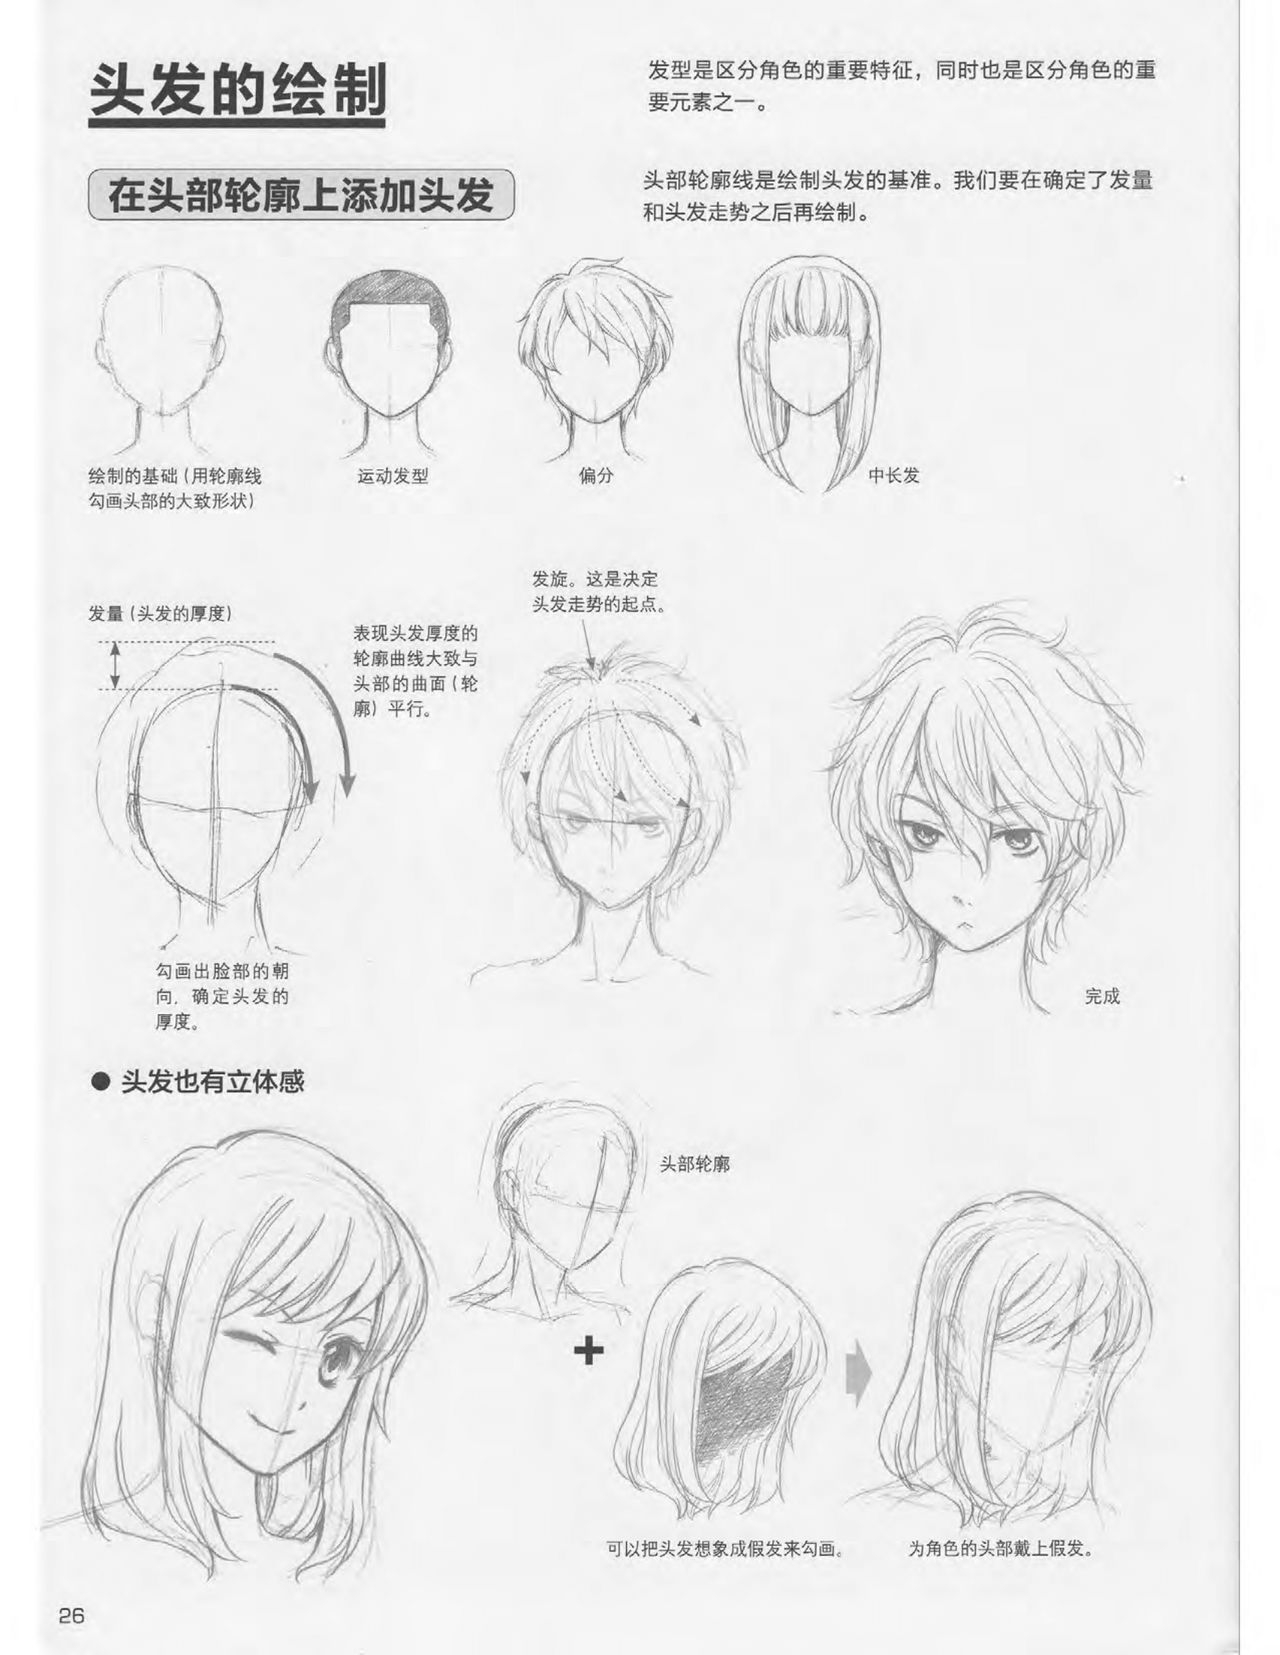 Japanese Manga Master Lecture 3: Lin Akira and Kakumaru Maru Talk About Glamorous Character Modeling 26